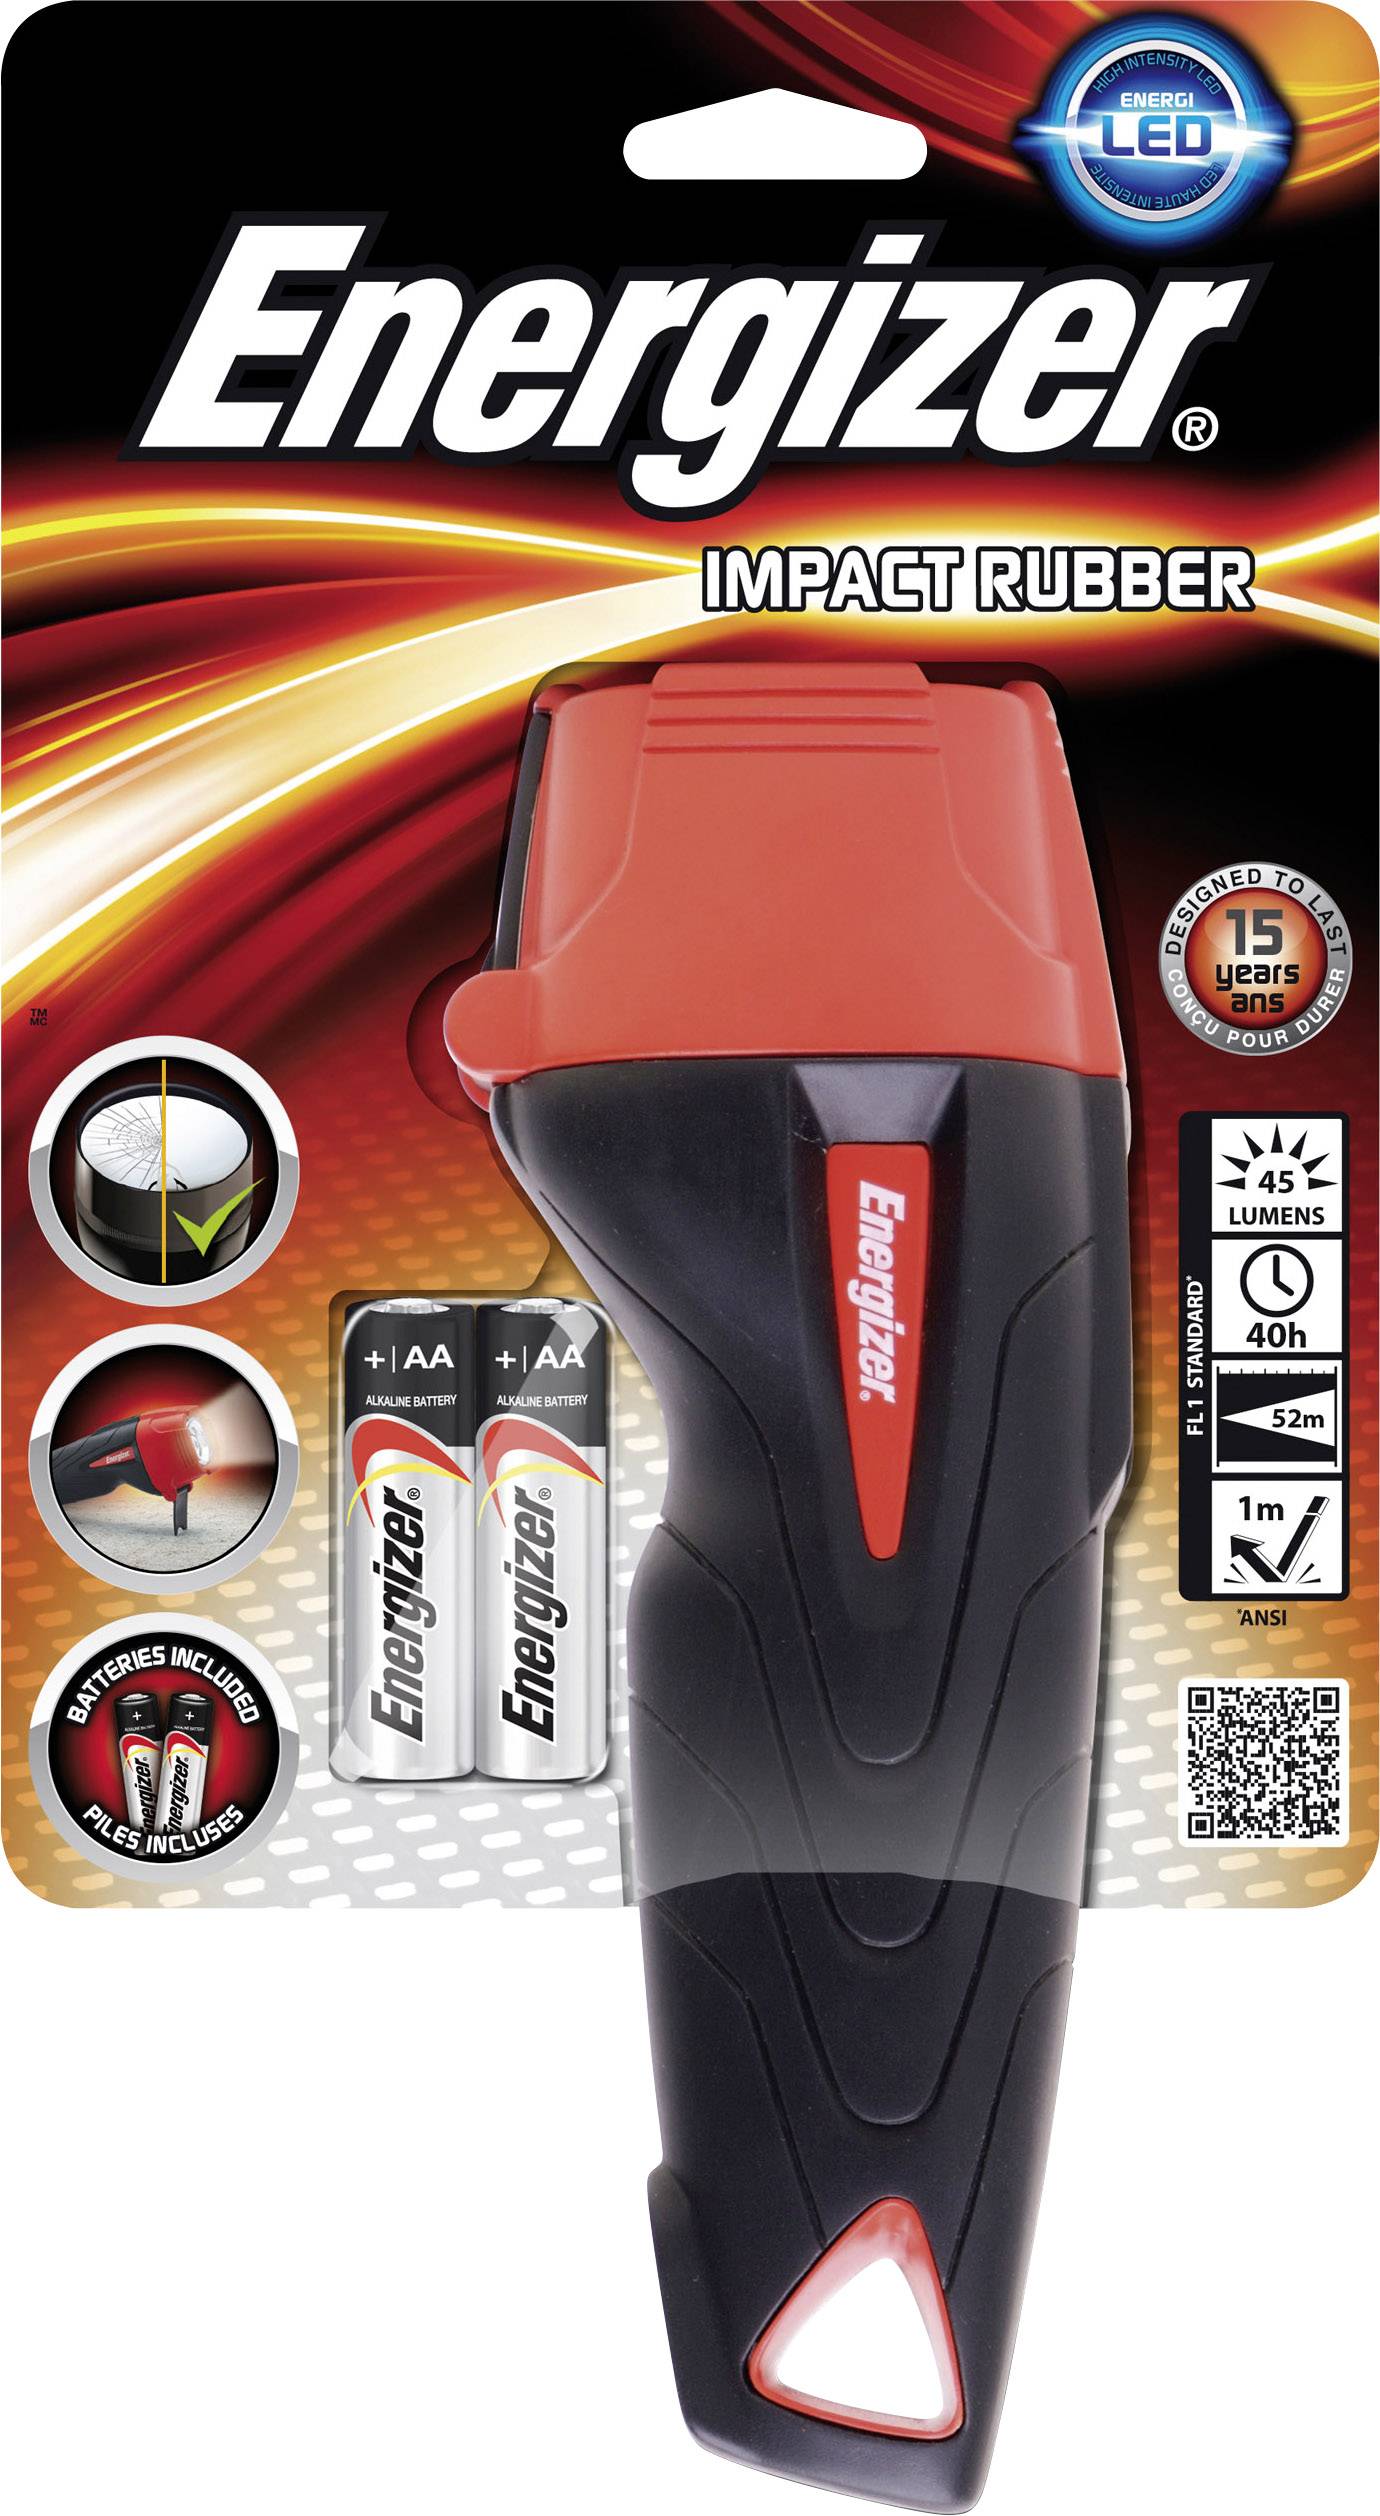 Energizer Impact Rubber flashlight 1un+2xAA